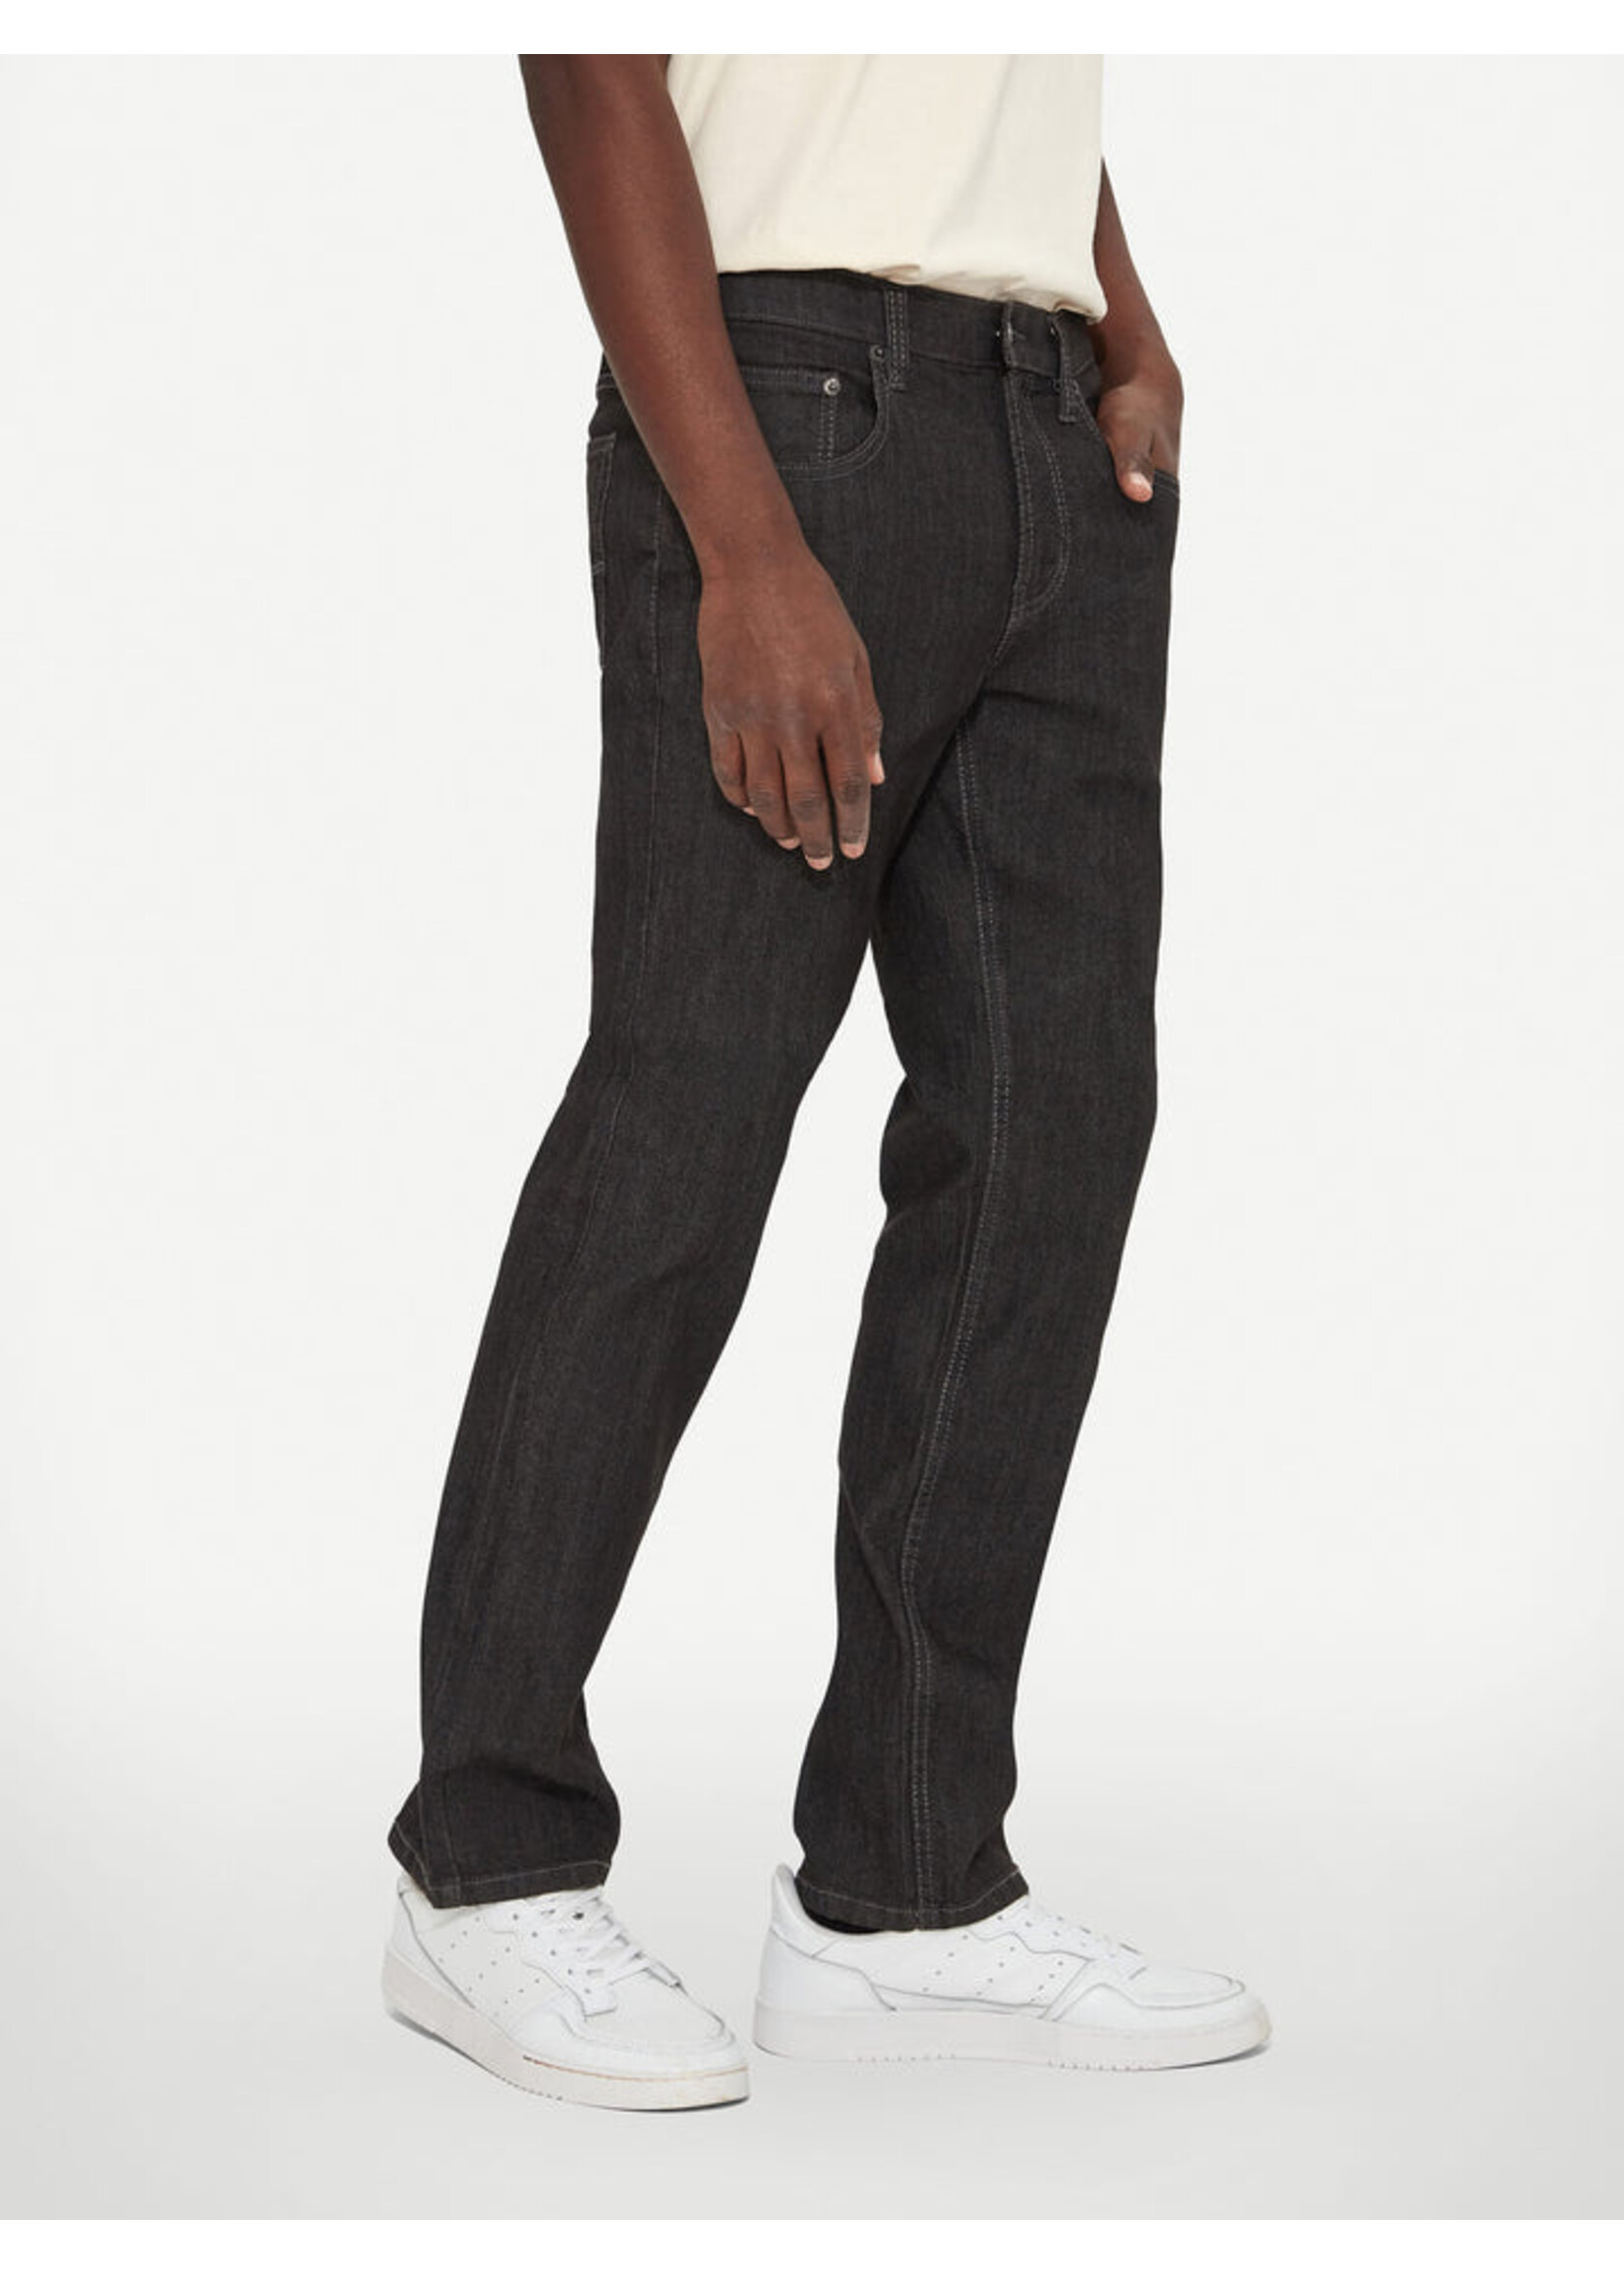 LOIS JEANS & JACKETS Pantalon Jeans coupe régulière Brad-Homme